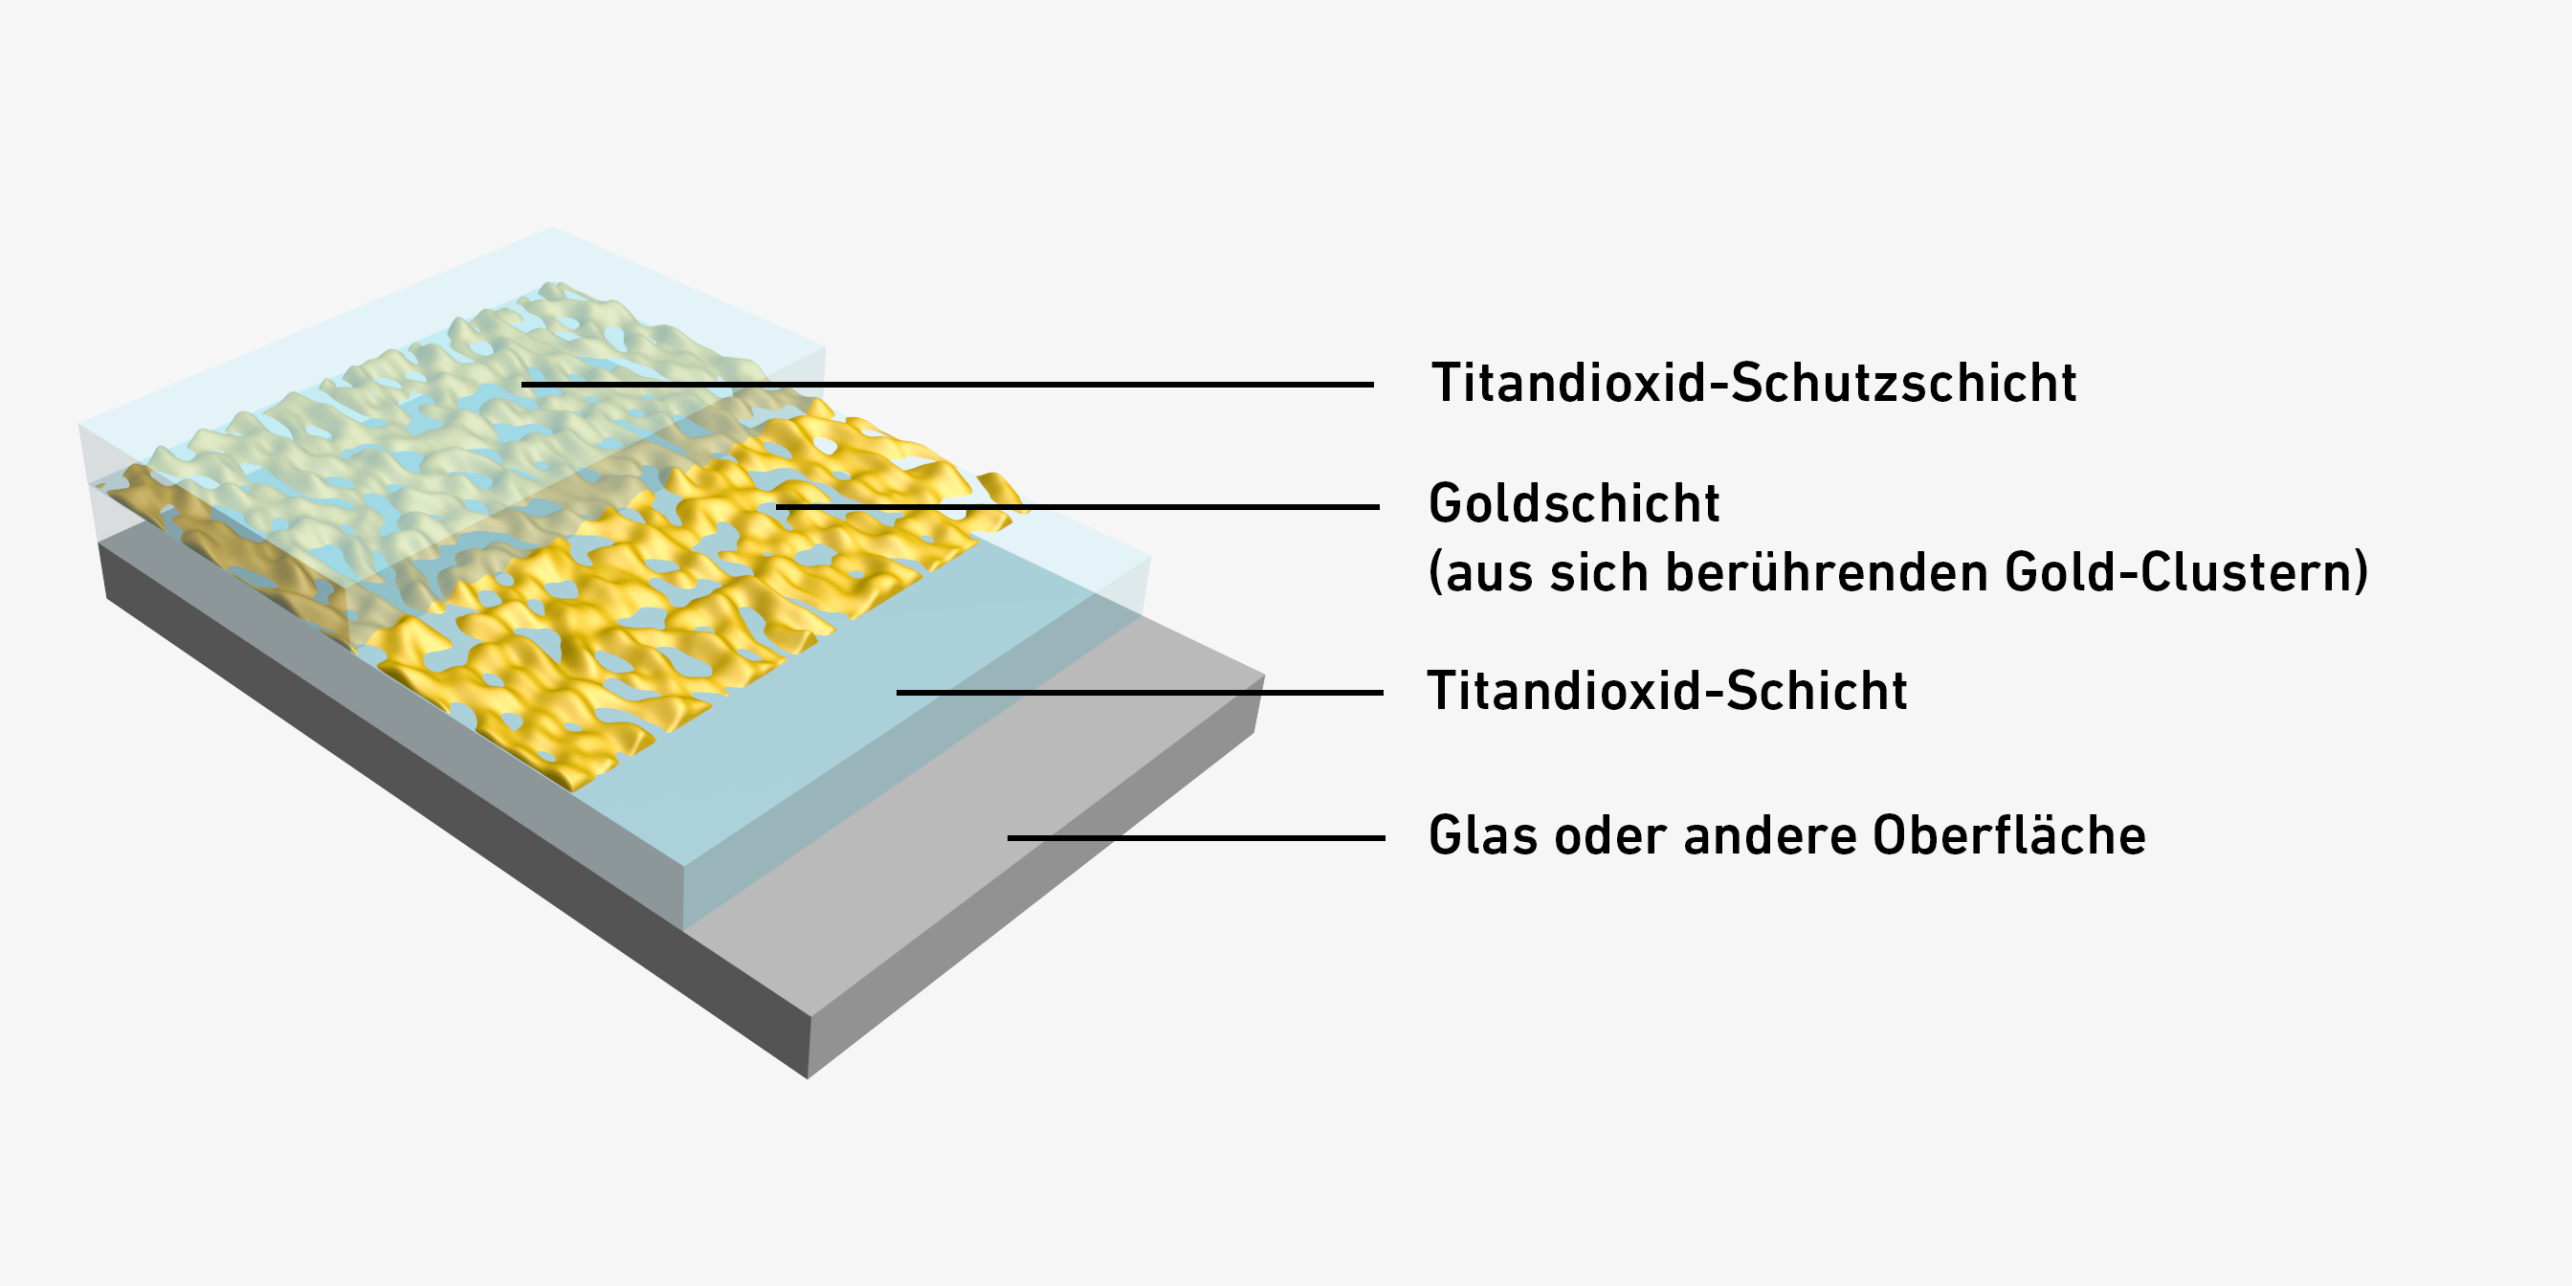 Vergr?sserte Ansicht: Eine Illustration davon, wie das Glas nicht mehr beschlägt. Es besteht aus 4 Schichten, einer Titandioxid-Schutzschicht, einer Goldschicht, einer Titandioxid-Schicht und dem Glas. 